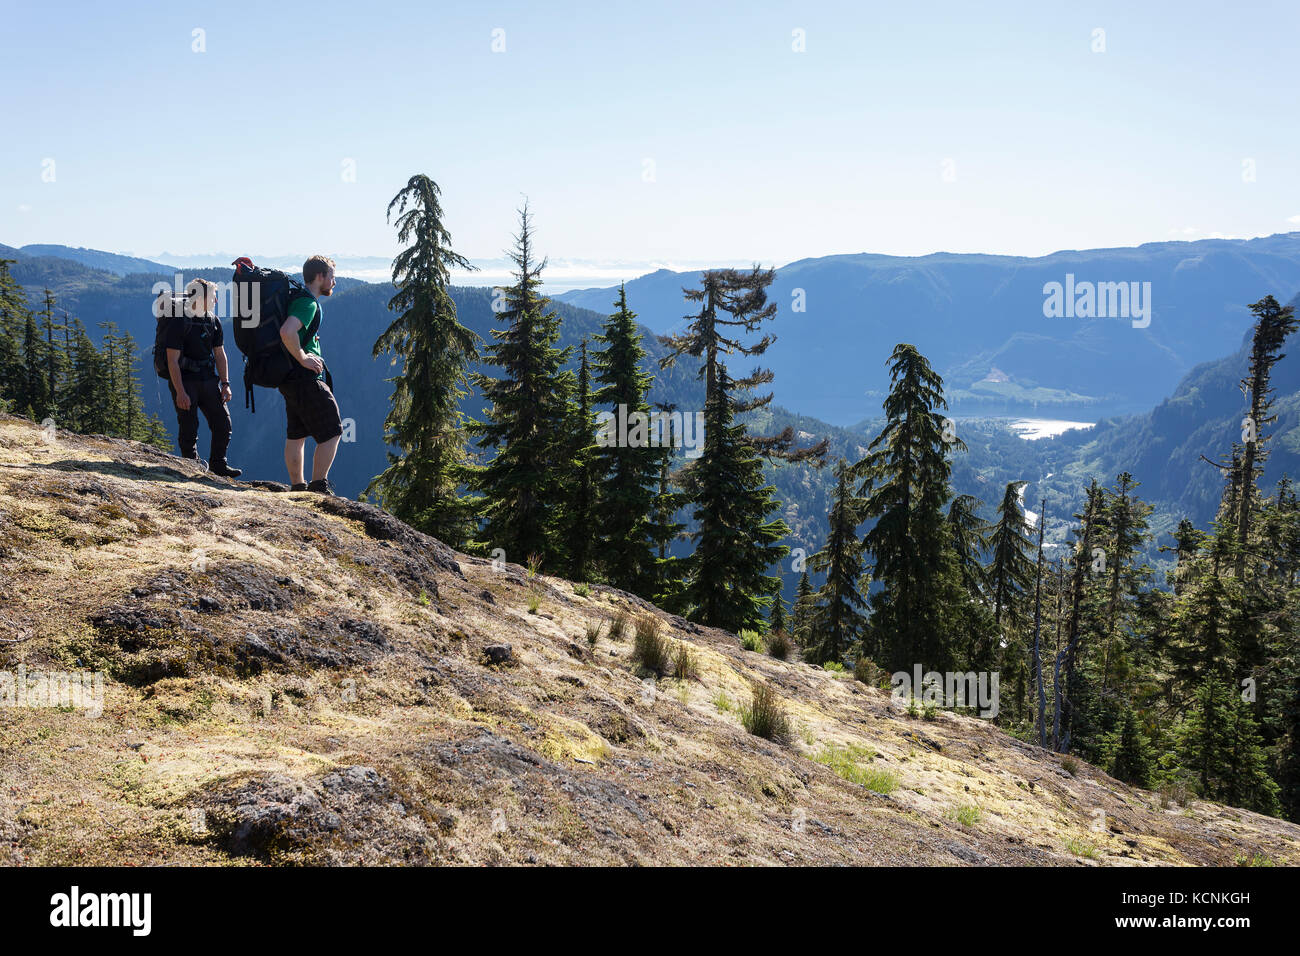 Zwei Wanderer halten an, um den Cruikshank Canyon zu besichtigen, den sie gerade auf dem Weg zum Lee Plateau, Vancouver Island, British Columbia, Kanada, bestiegen haben Stockfoto